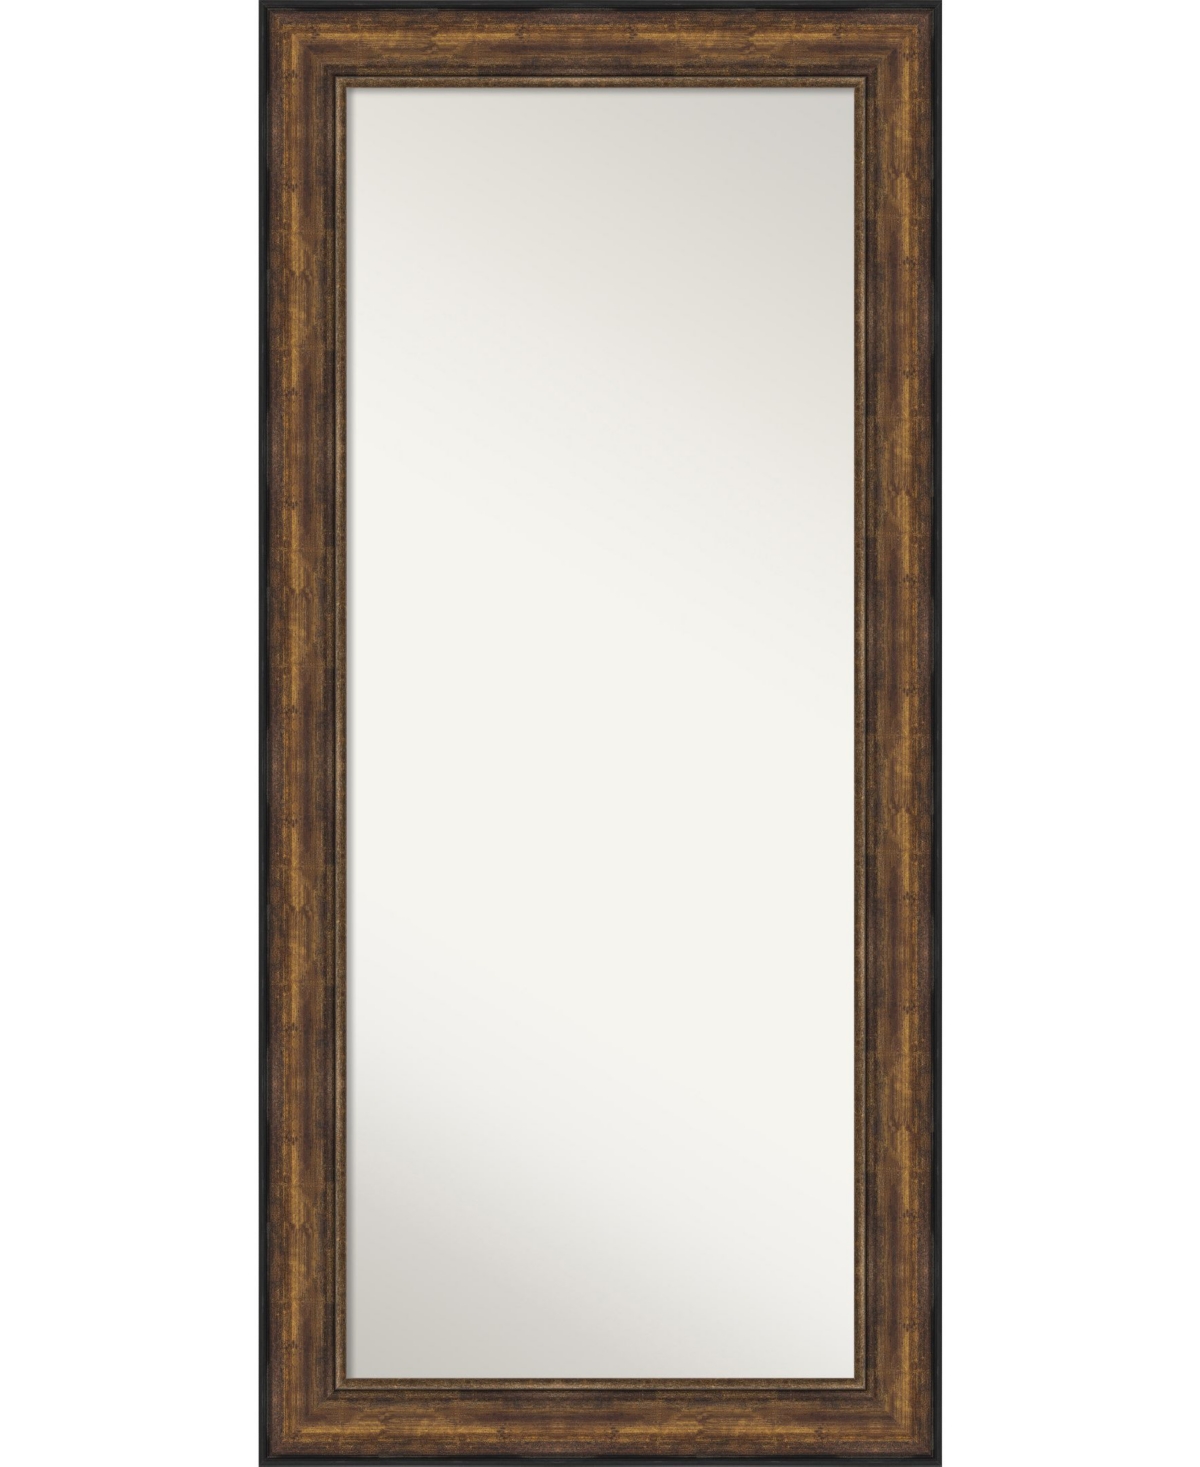 Ballroom Framed Floor/Leaner Full Length Mirror, 31.5" x 67.50" - Bronze